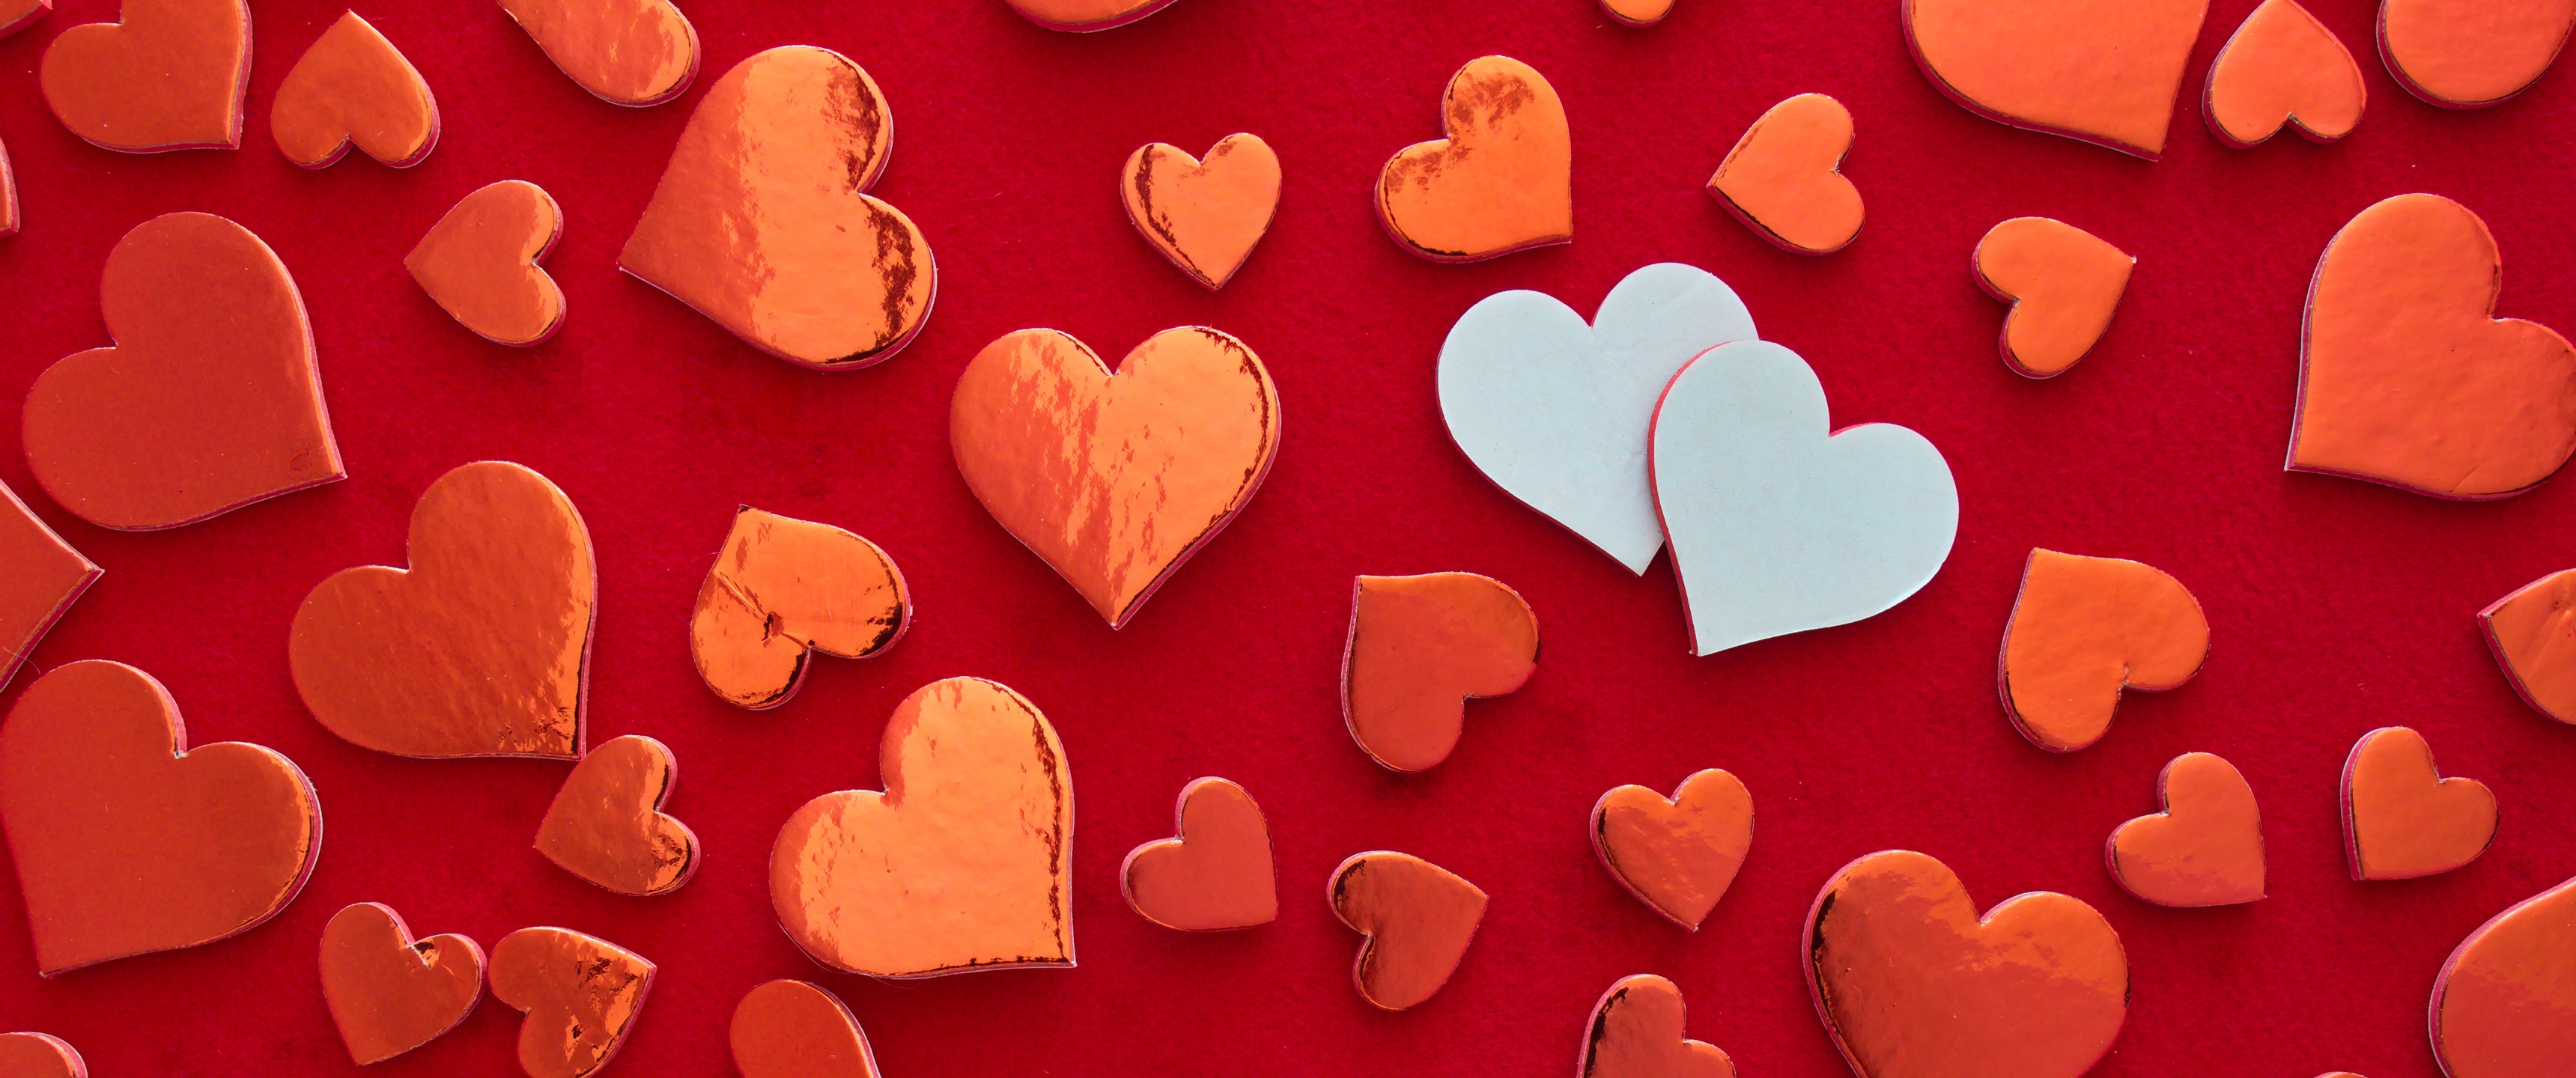 Red hearts Wallpaper 4K, Heart shape, Love, #4642